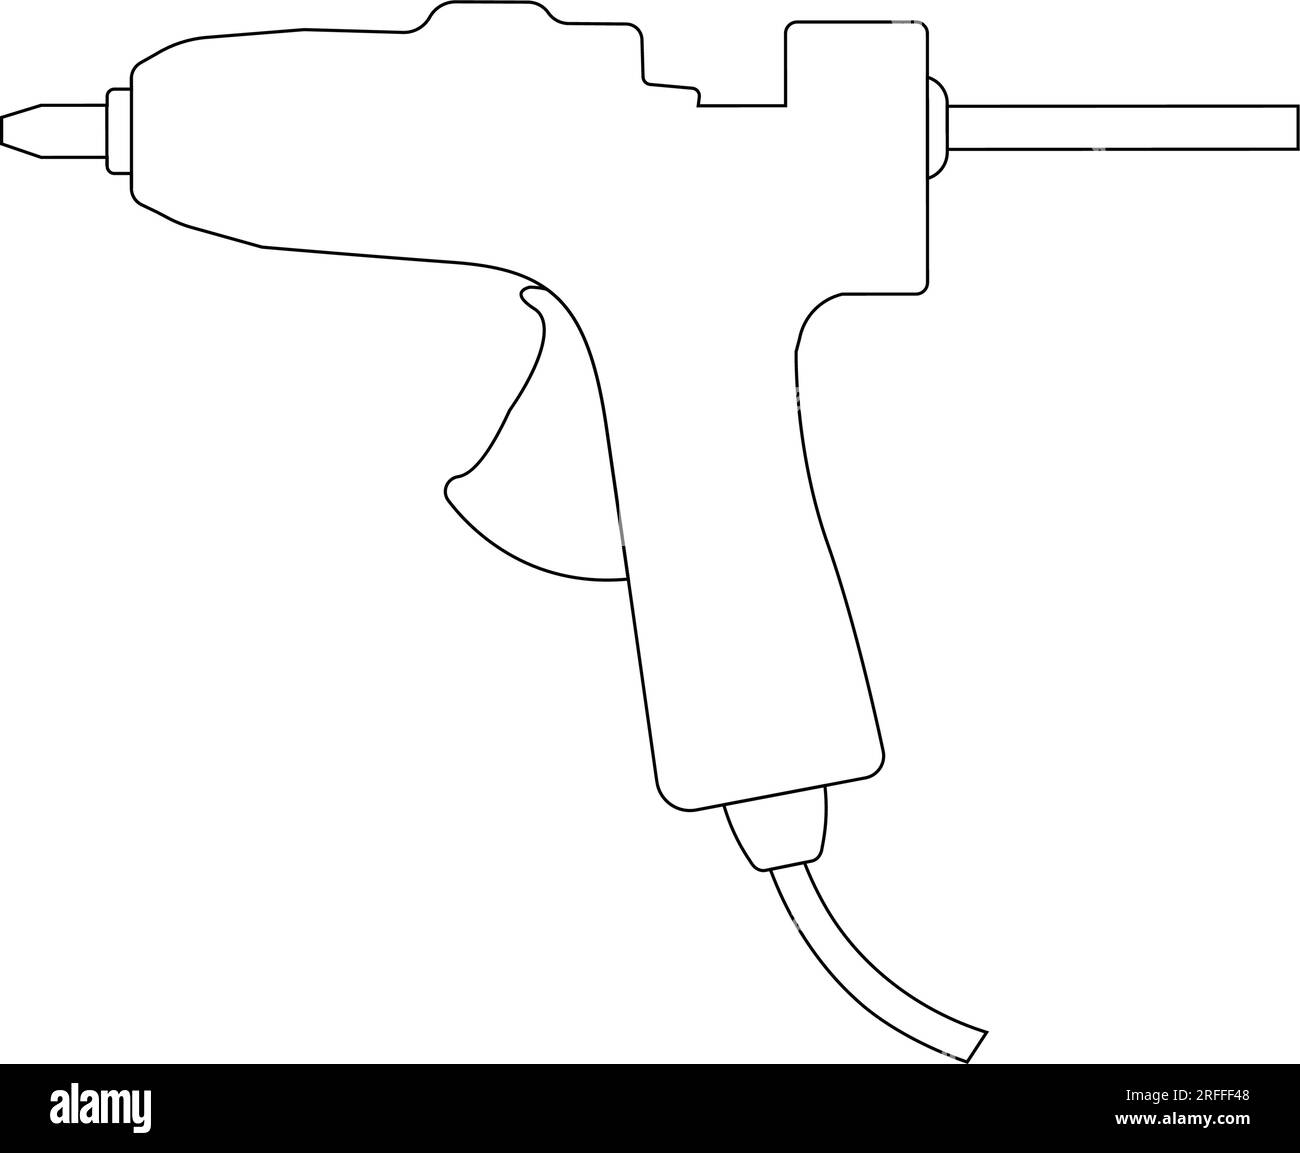 Pistola De Pegamento Industrial Para La Extrusión, Pastas De Silicona.  Ilustraciones svg, vectoriales, clip art vectorizado libre de derechos.  Image 26981207